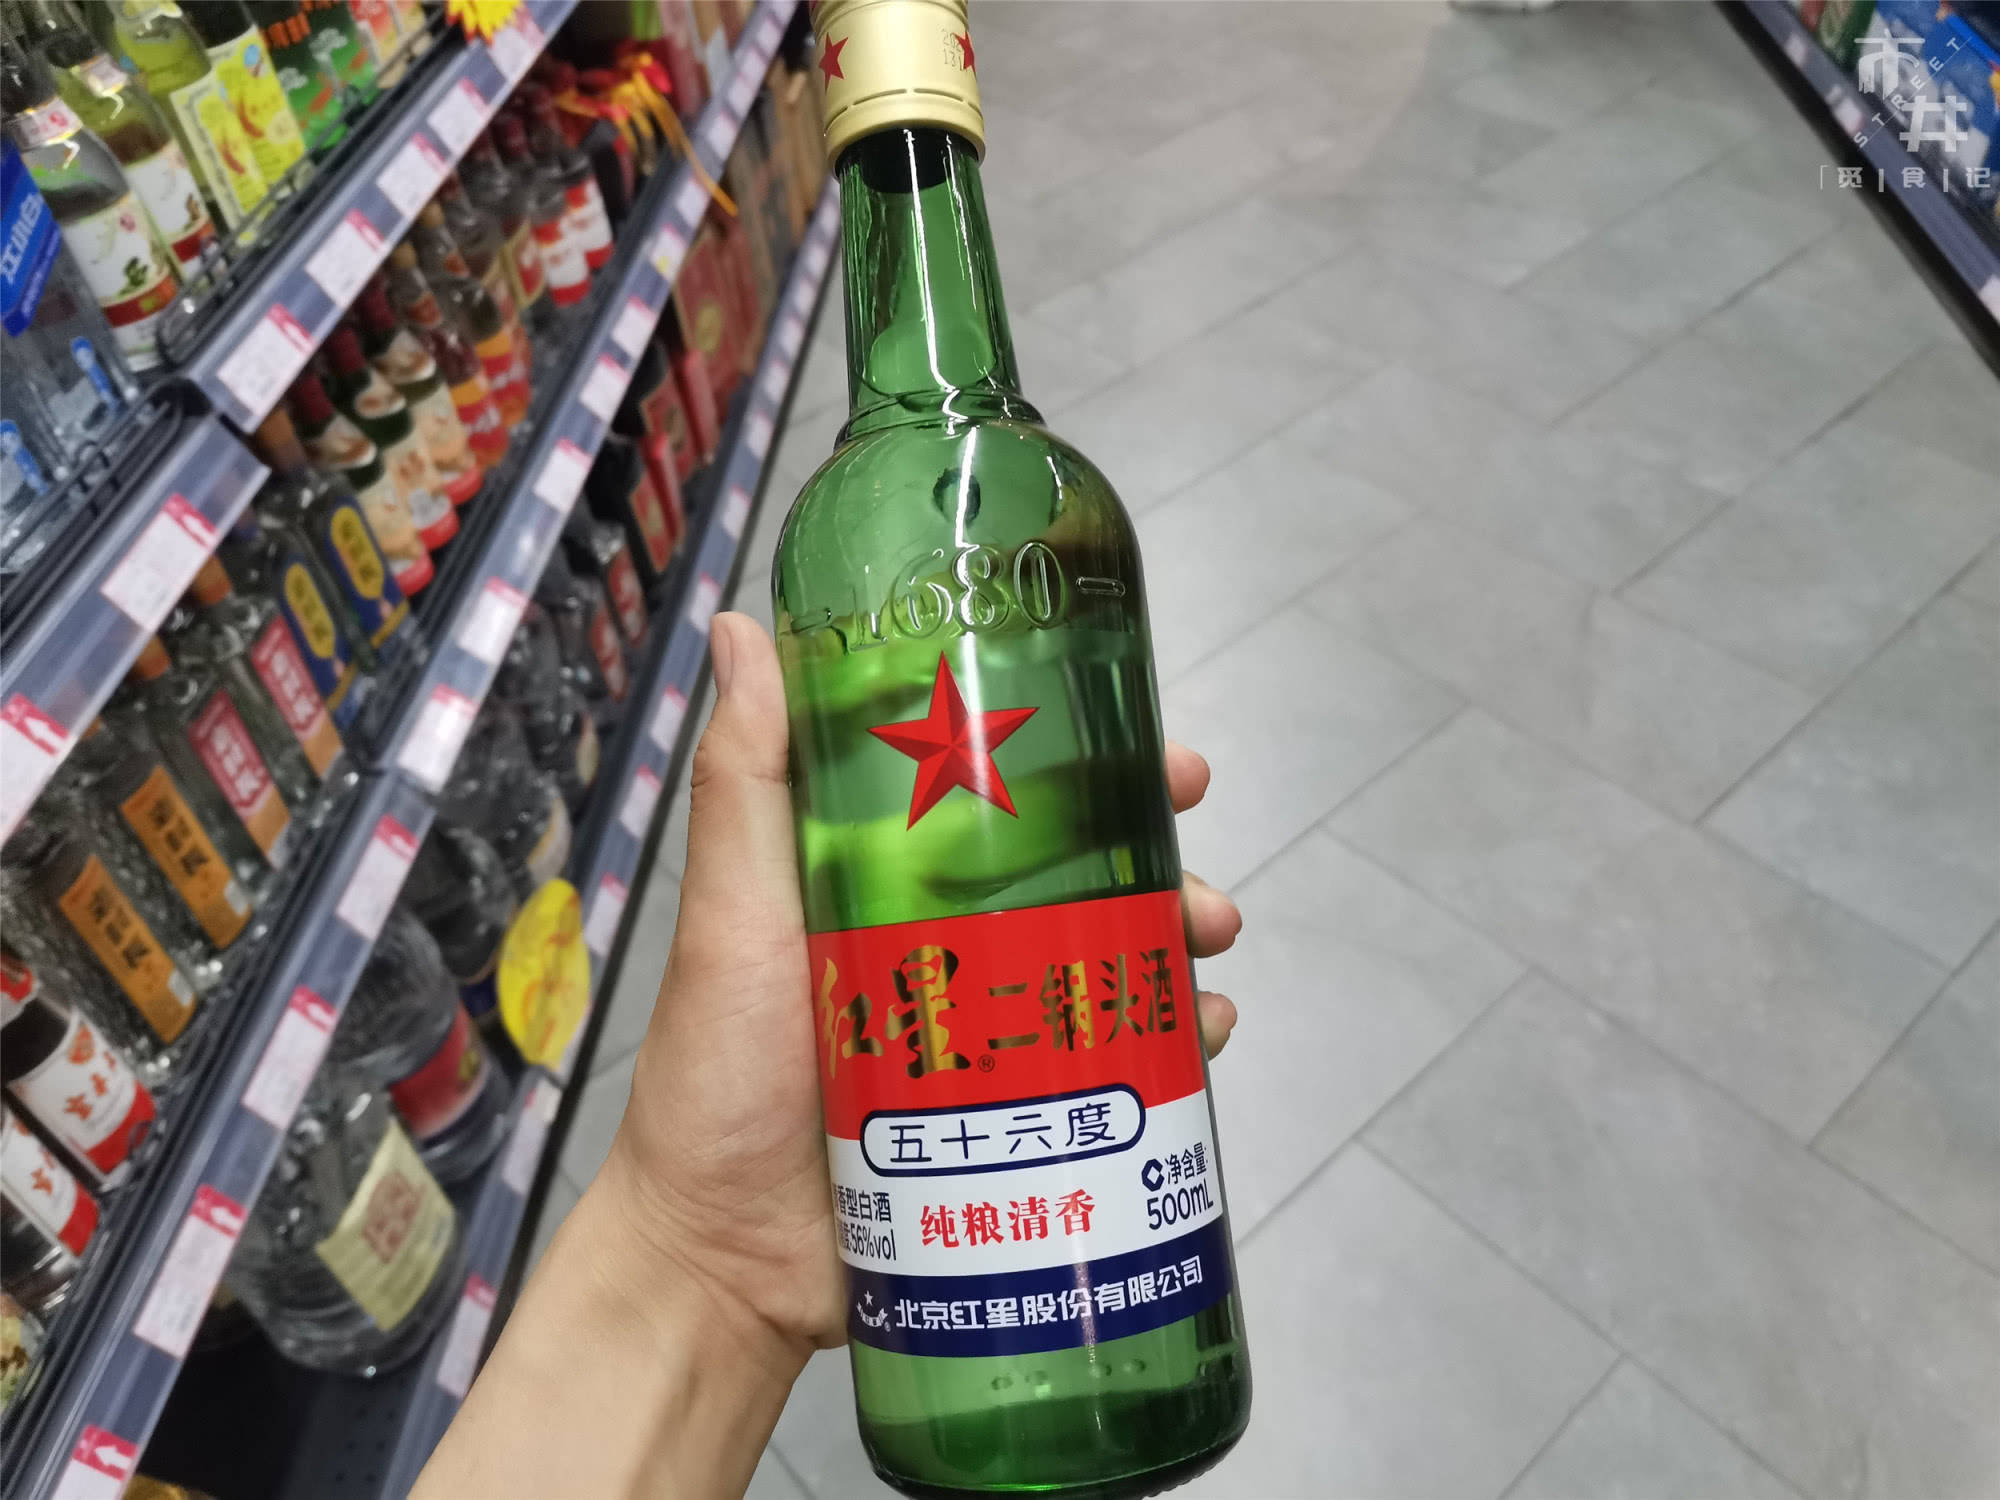 红星二锅头在超市里也很常见,它可是实打实的纯粮酒!